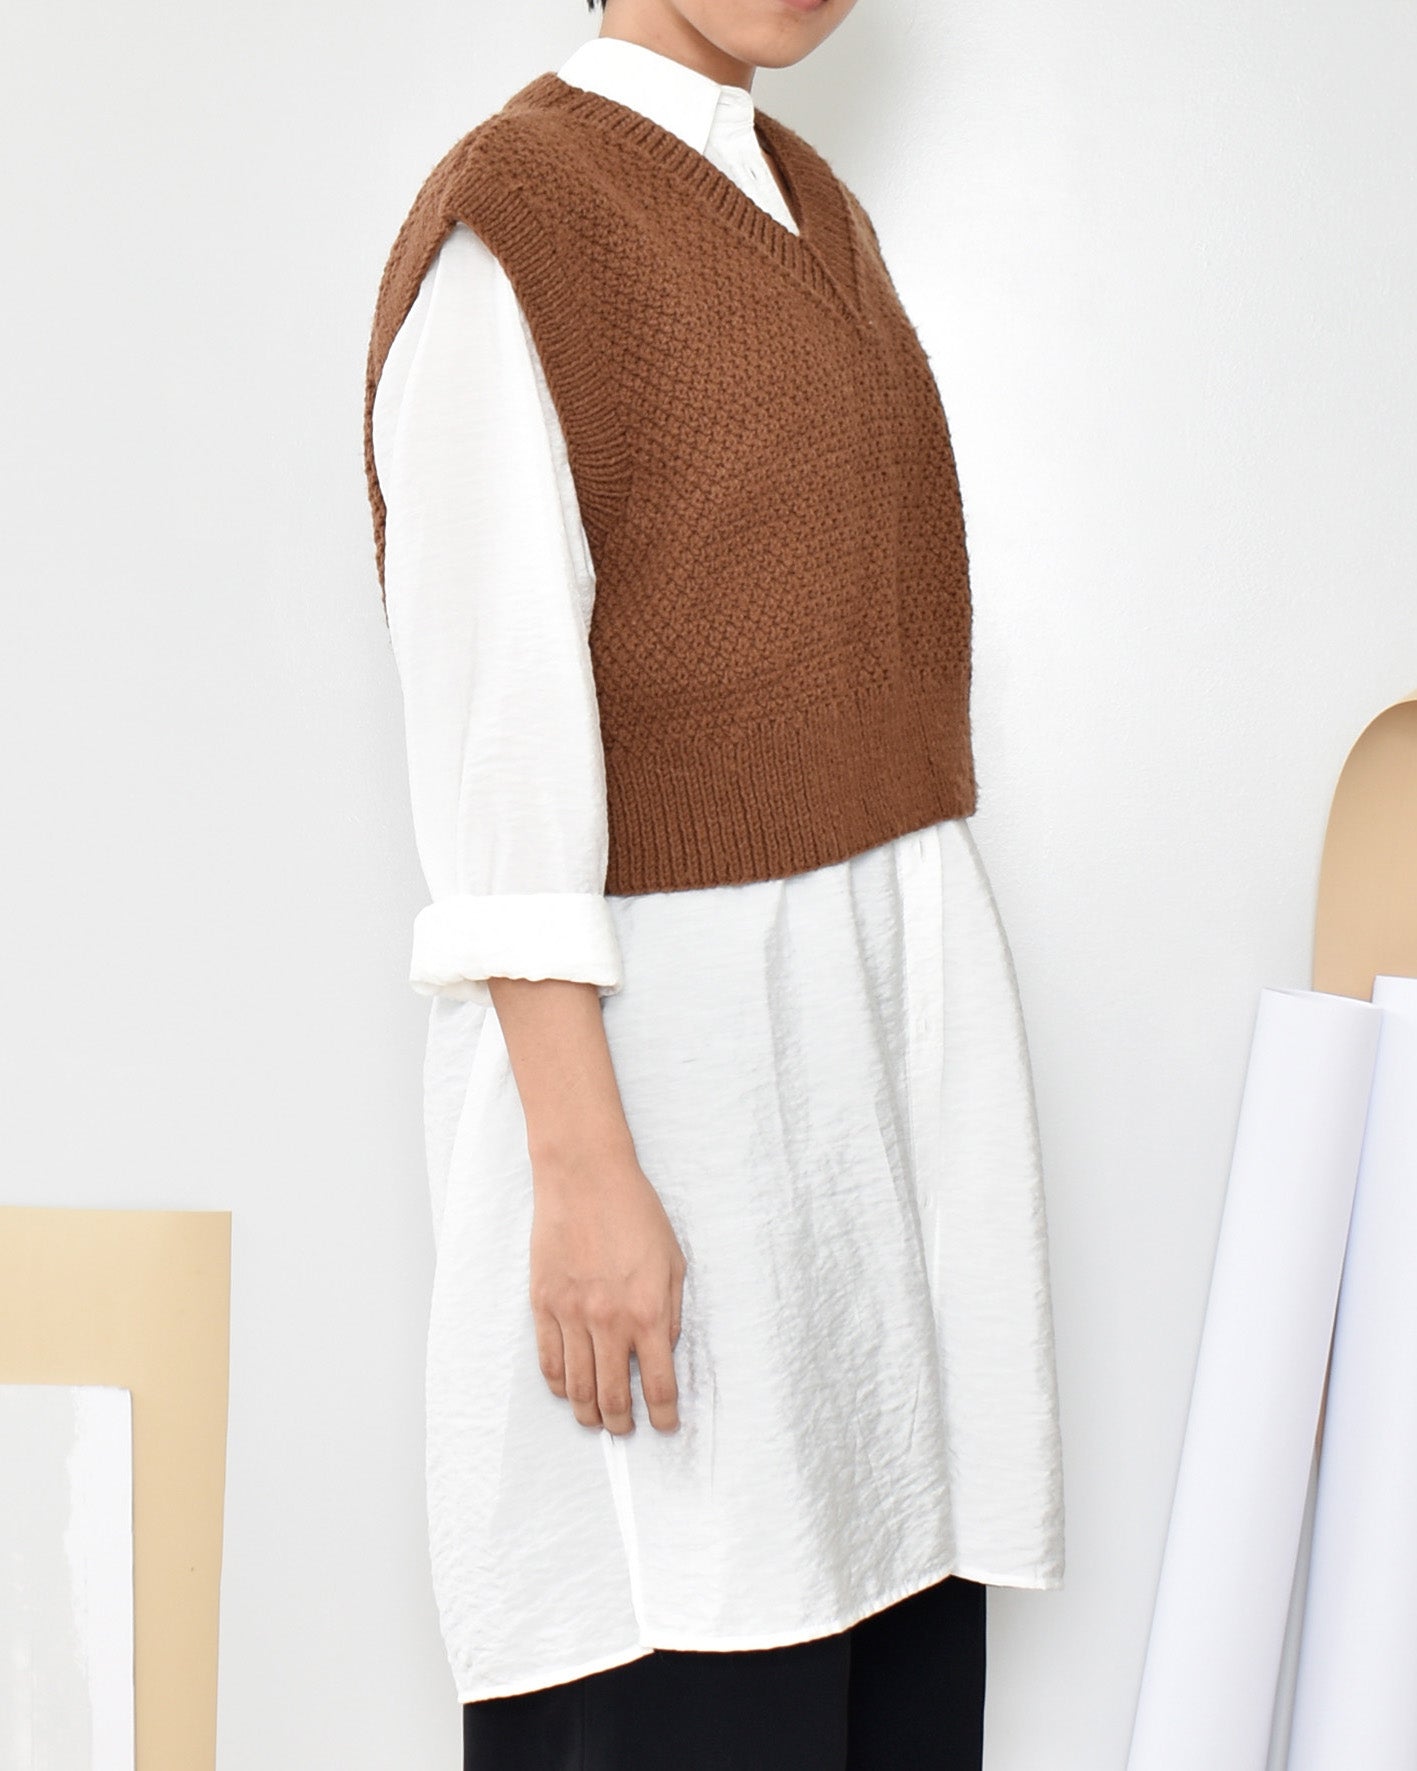 Vest No.9 | Easy knitting pattern